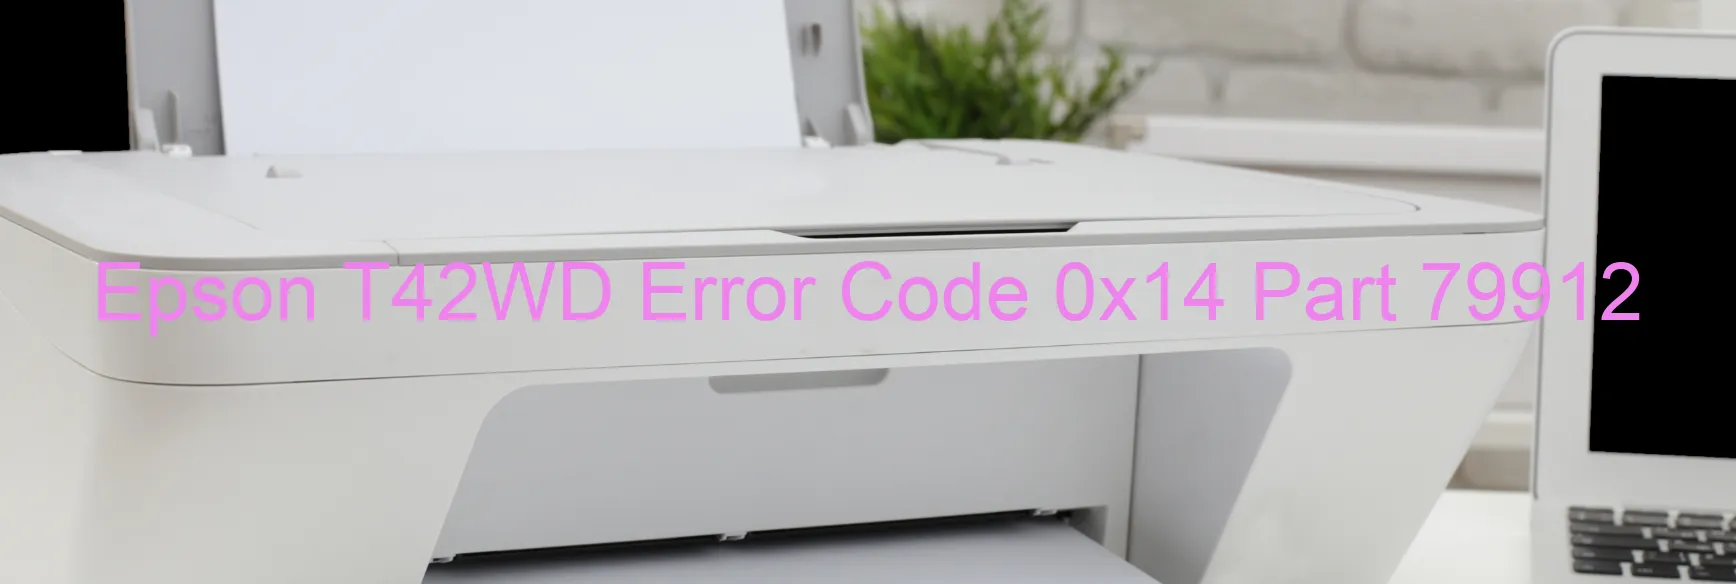 Epson T42WD Error Code 0x14 Part 79912